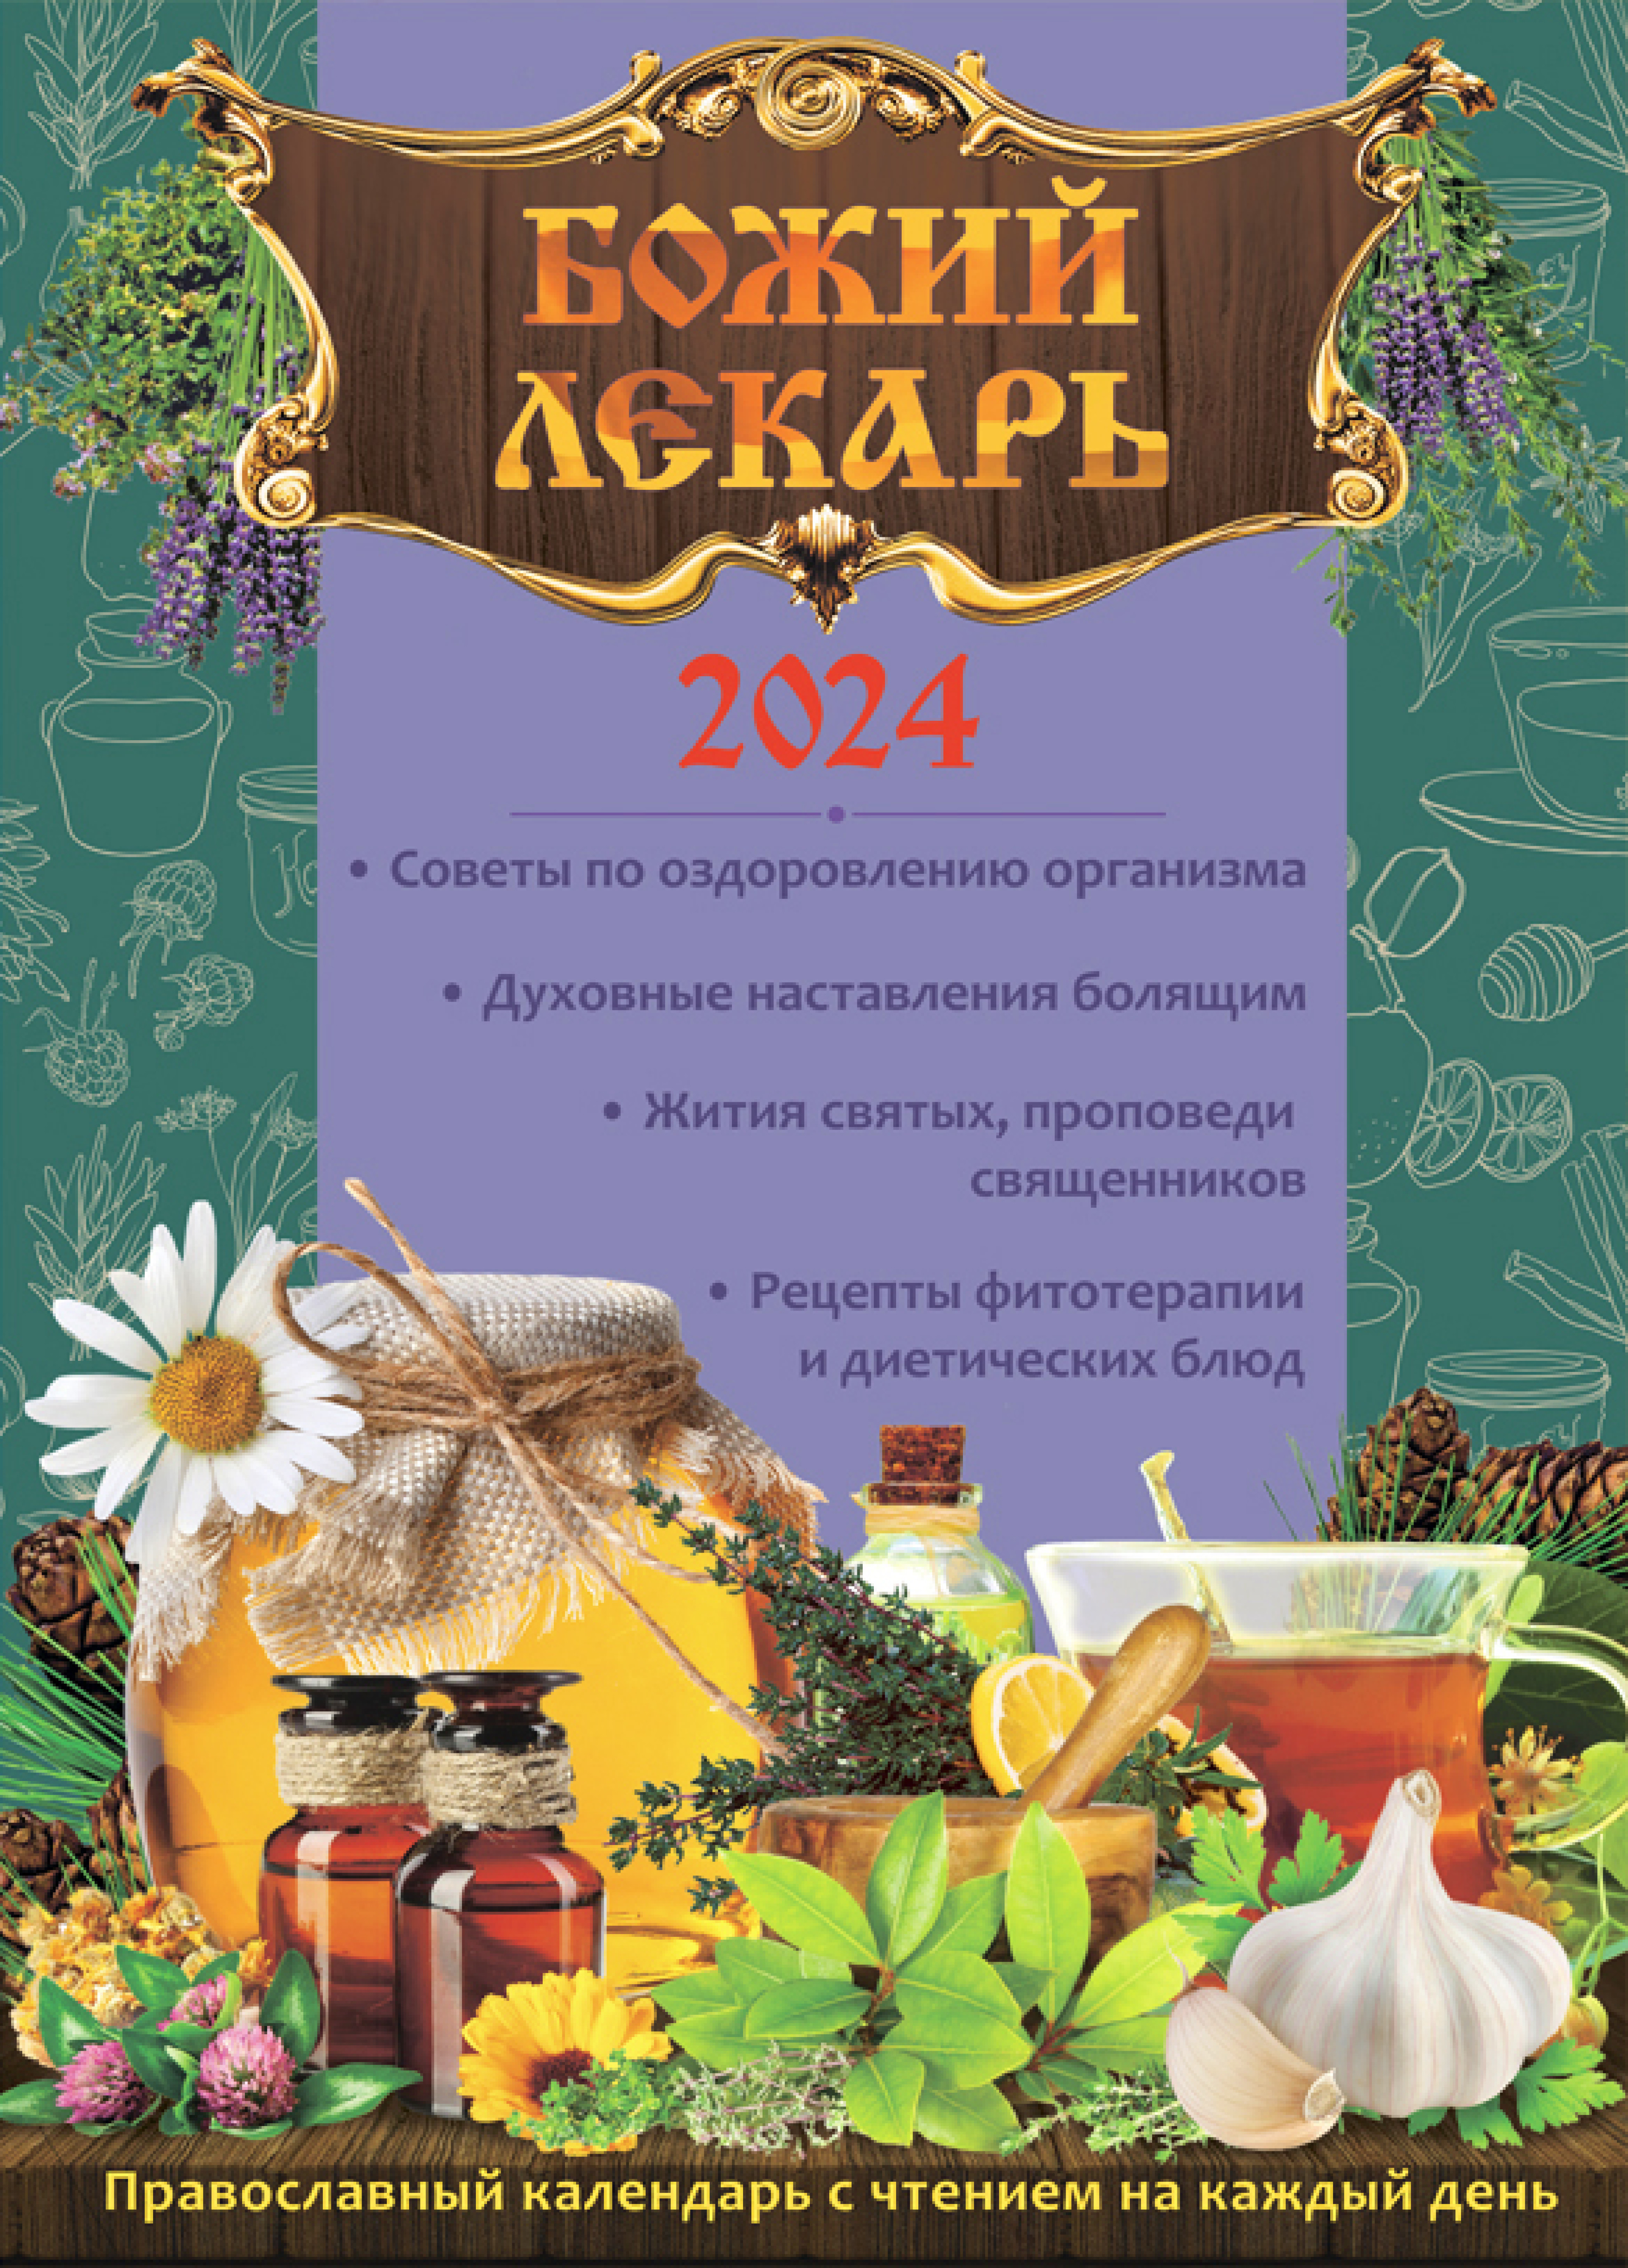 Календарь православный на 2024 год. Божий лекарь